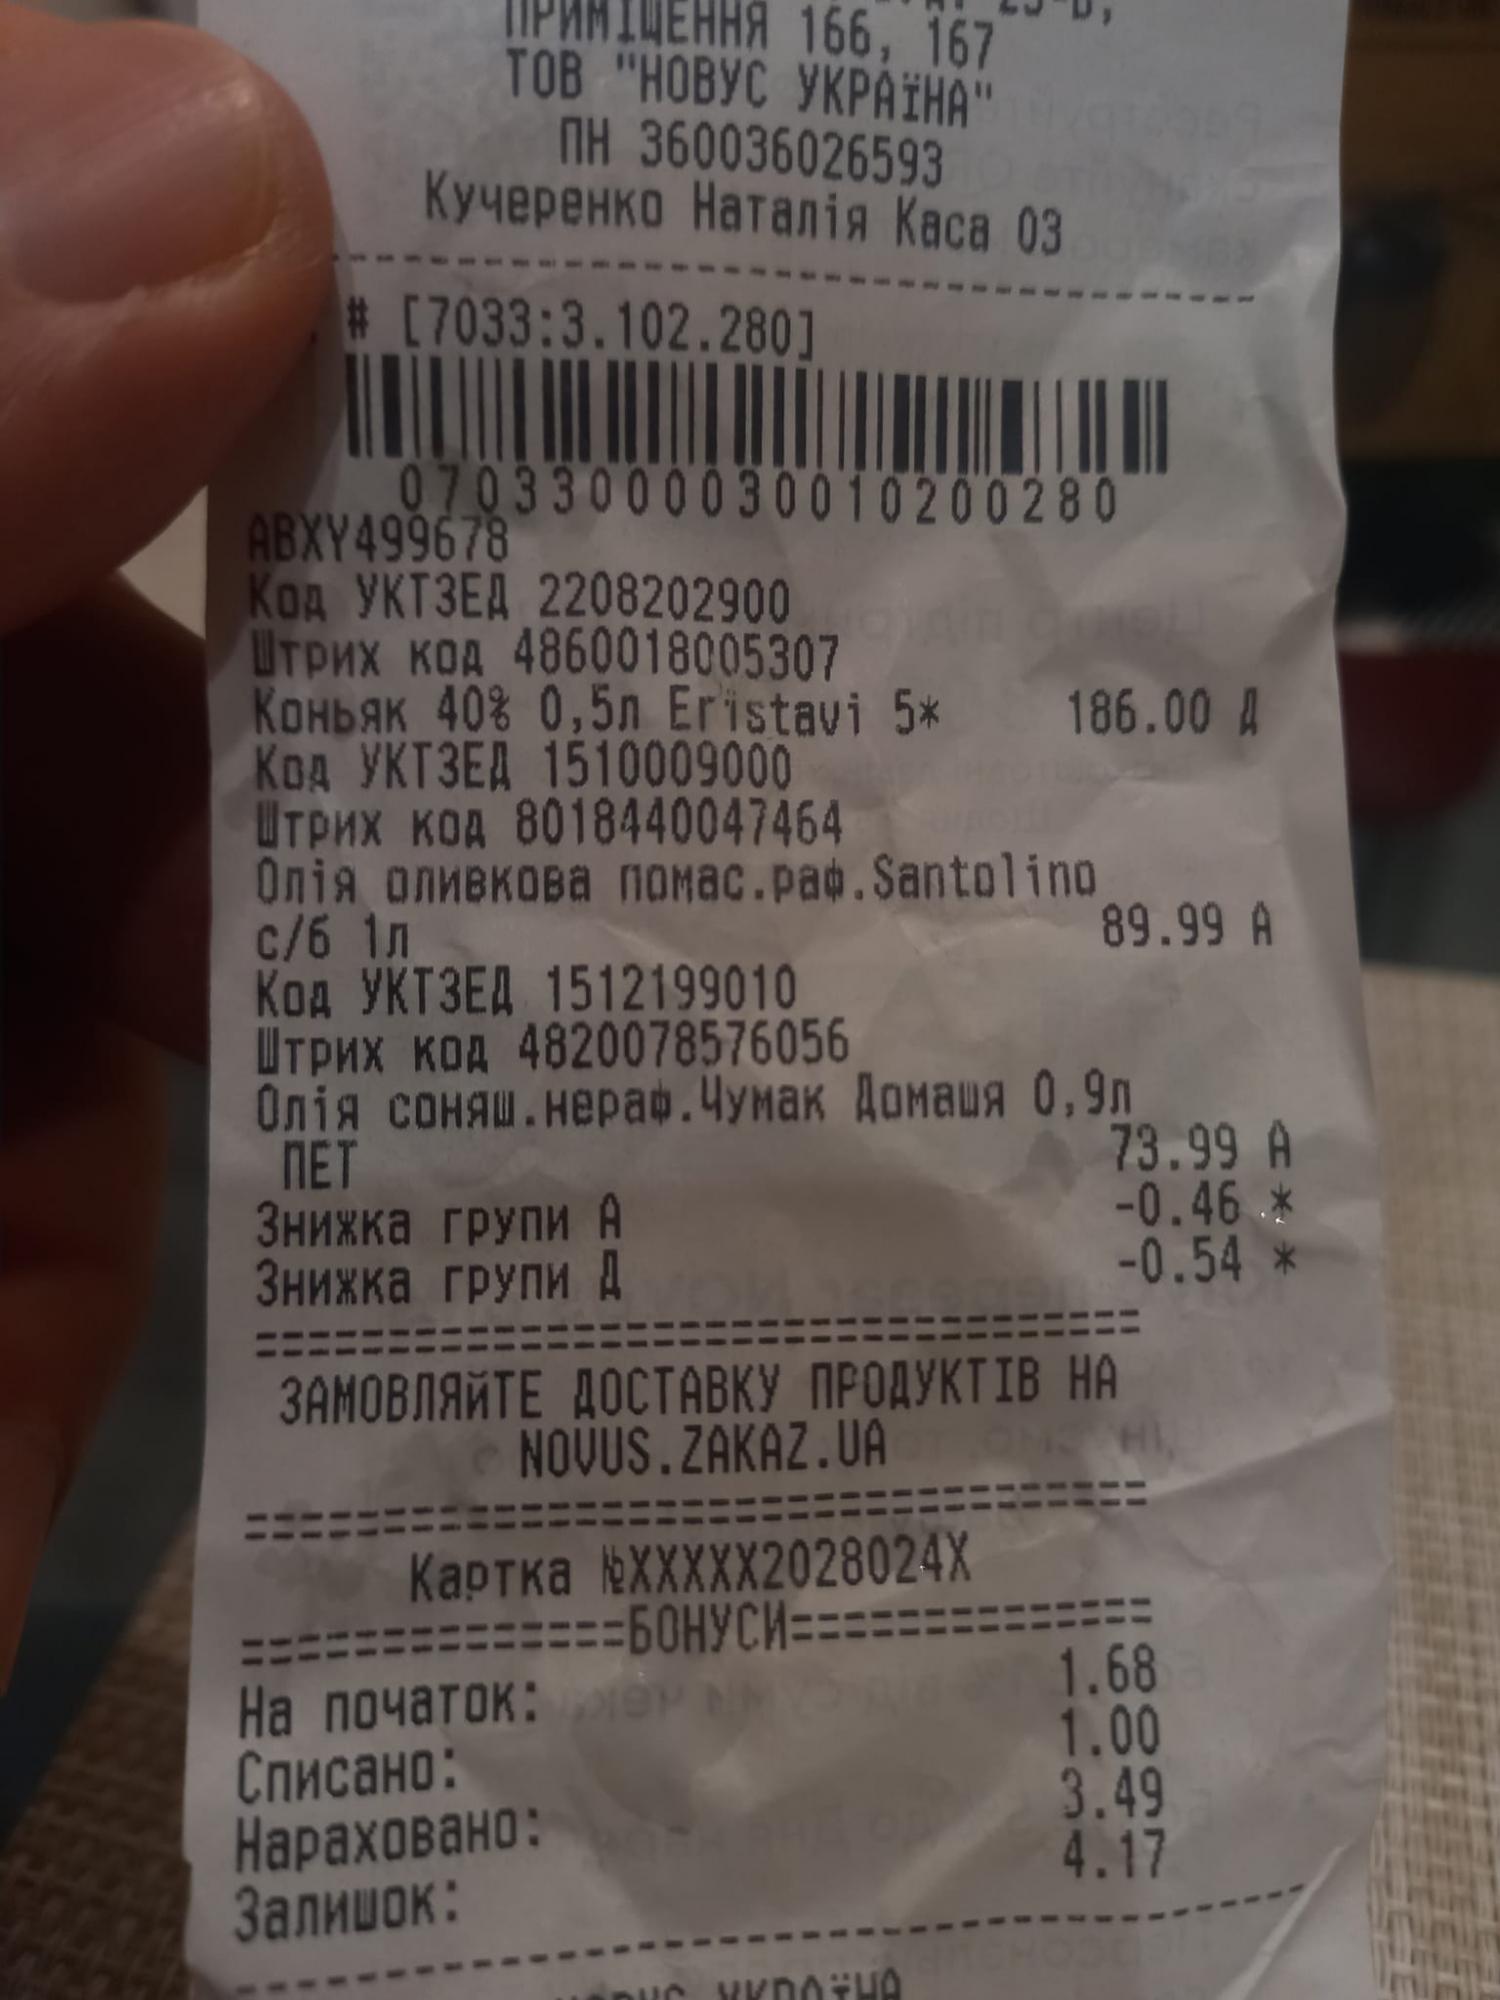 В Украине подсолнечное масло по цене сравнялось с оливковым: в сети показали доказательство